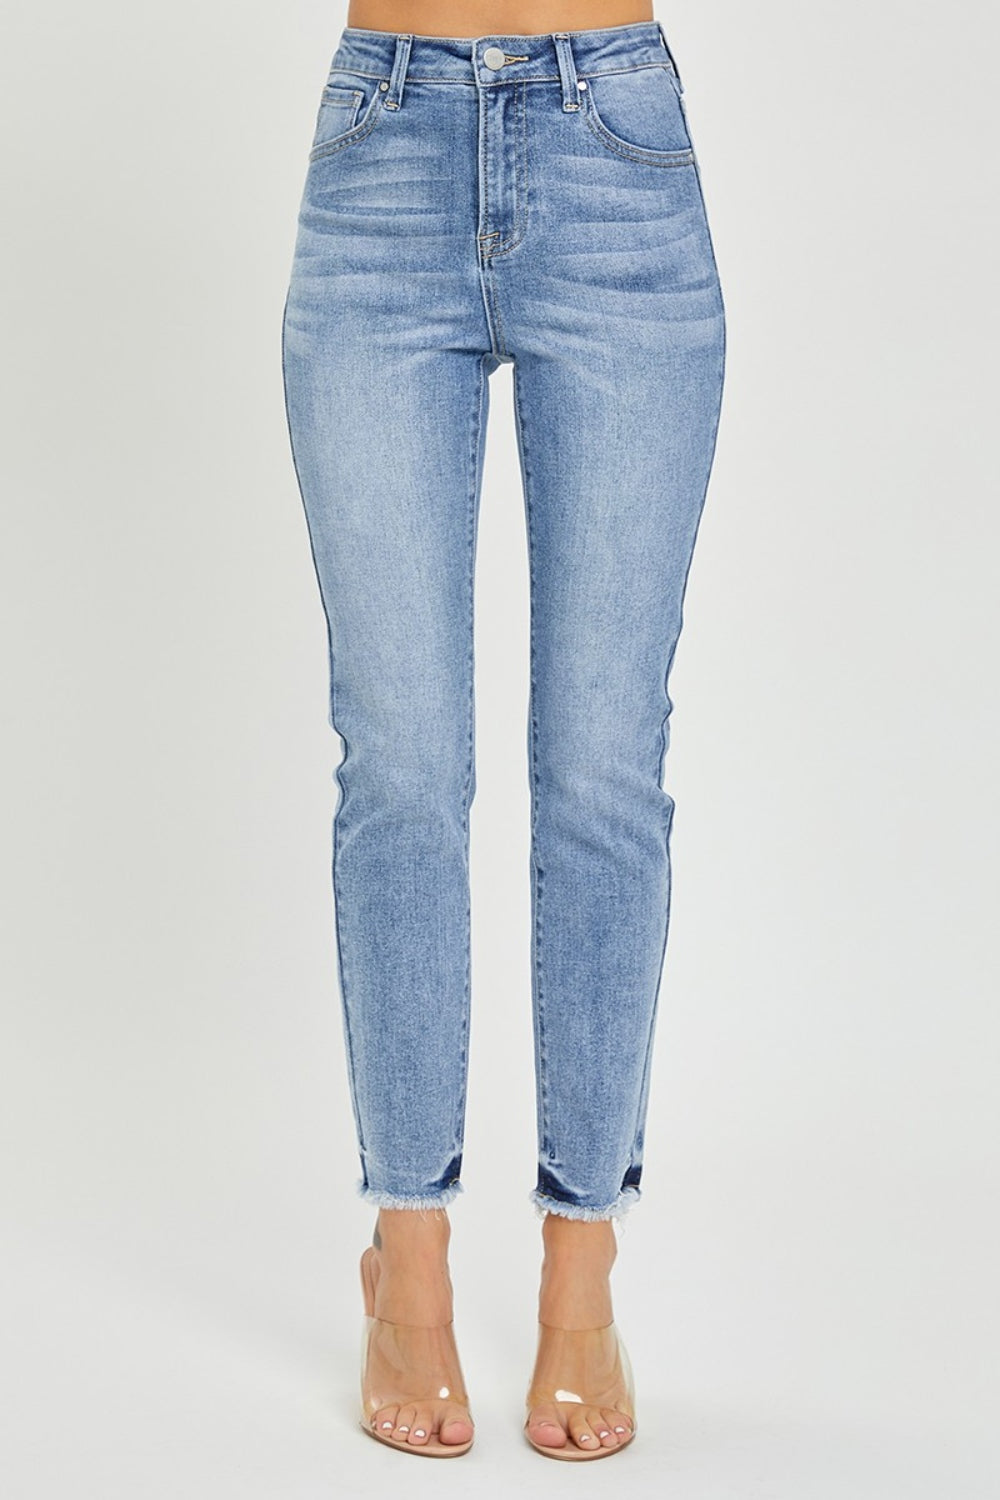 RISEN Full Size High Rise Frayed Hem Skinny Jeans Bottom wear